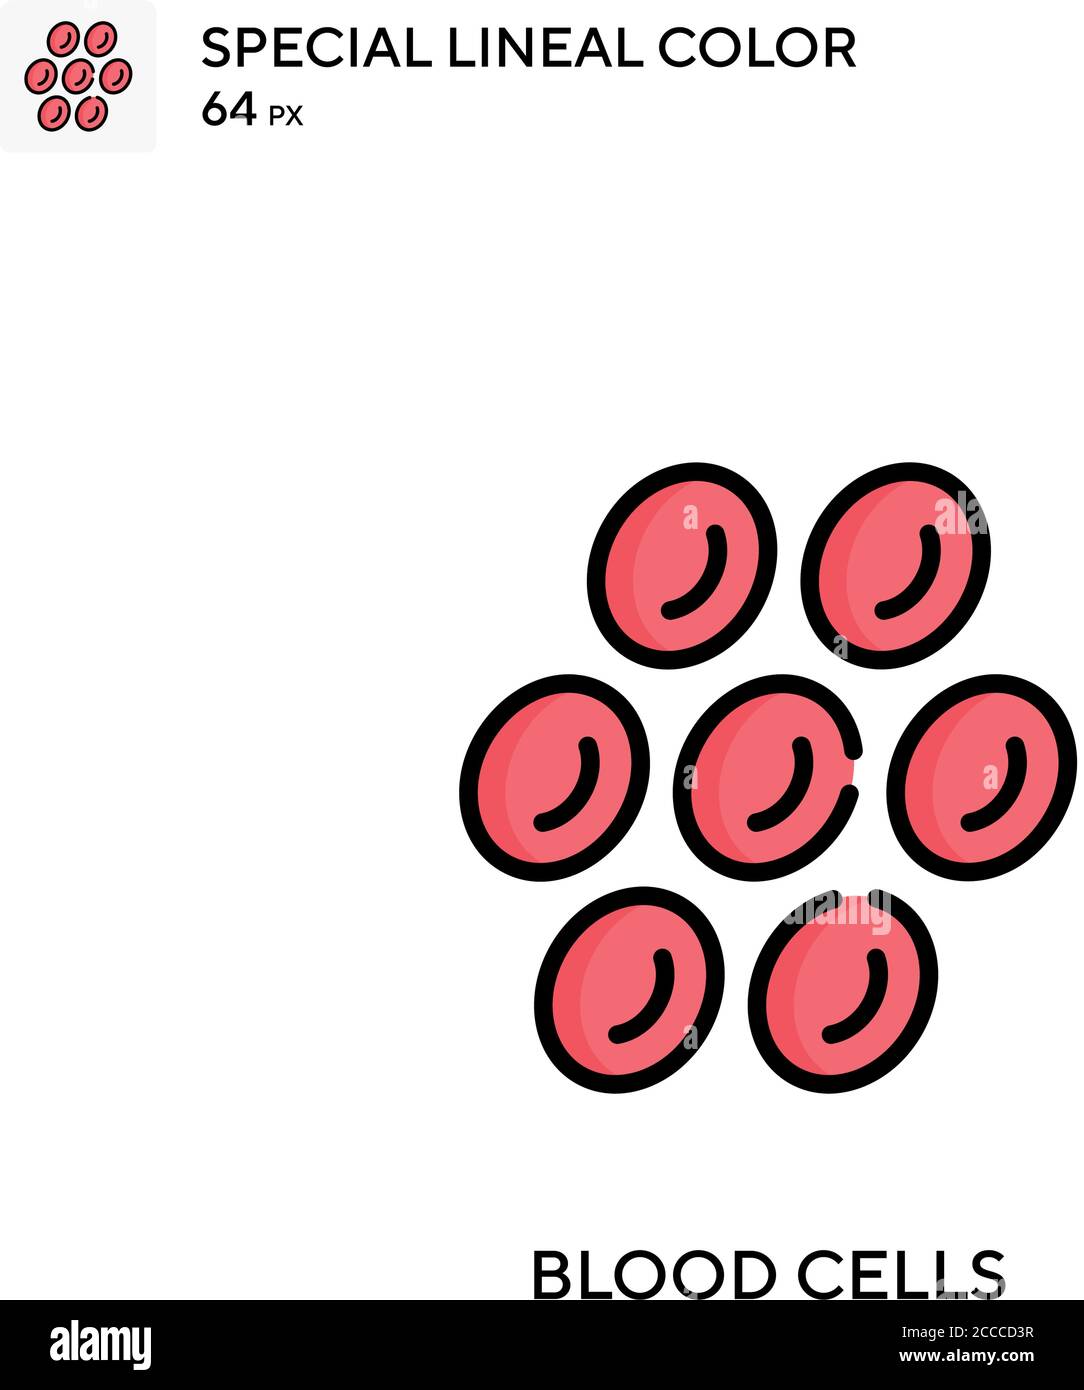 Células sanguíneas icono de color lineal especial. Plantilla de diseño de símbolos de ilustración para elemento de interfaz de usuario móvil web. Pictograma moderno de color perfecto sobre estrok editable Ilustración del Vector